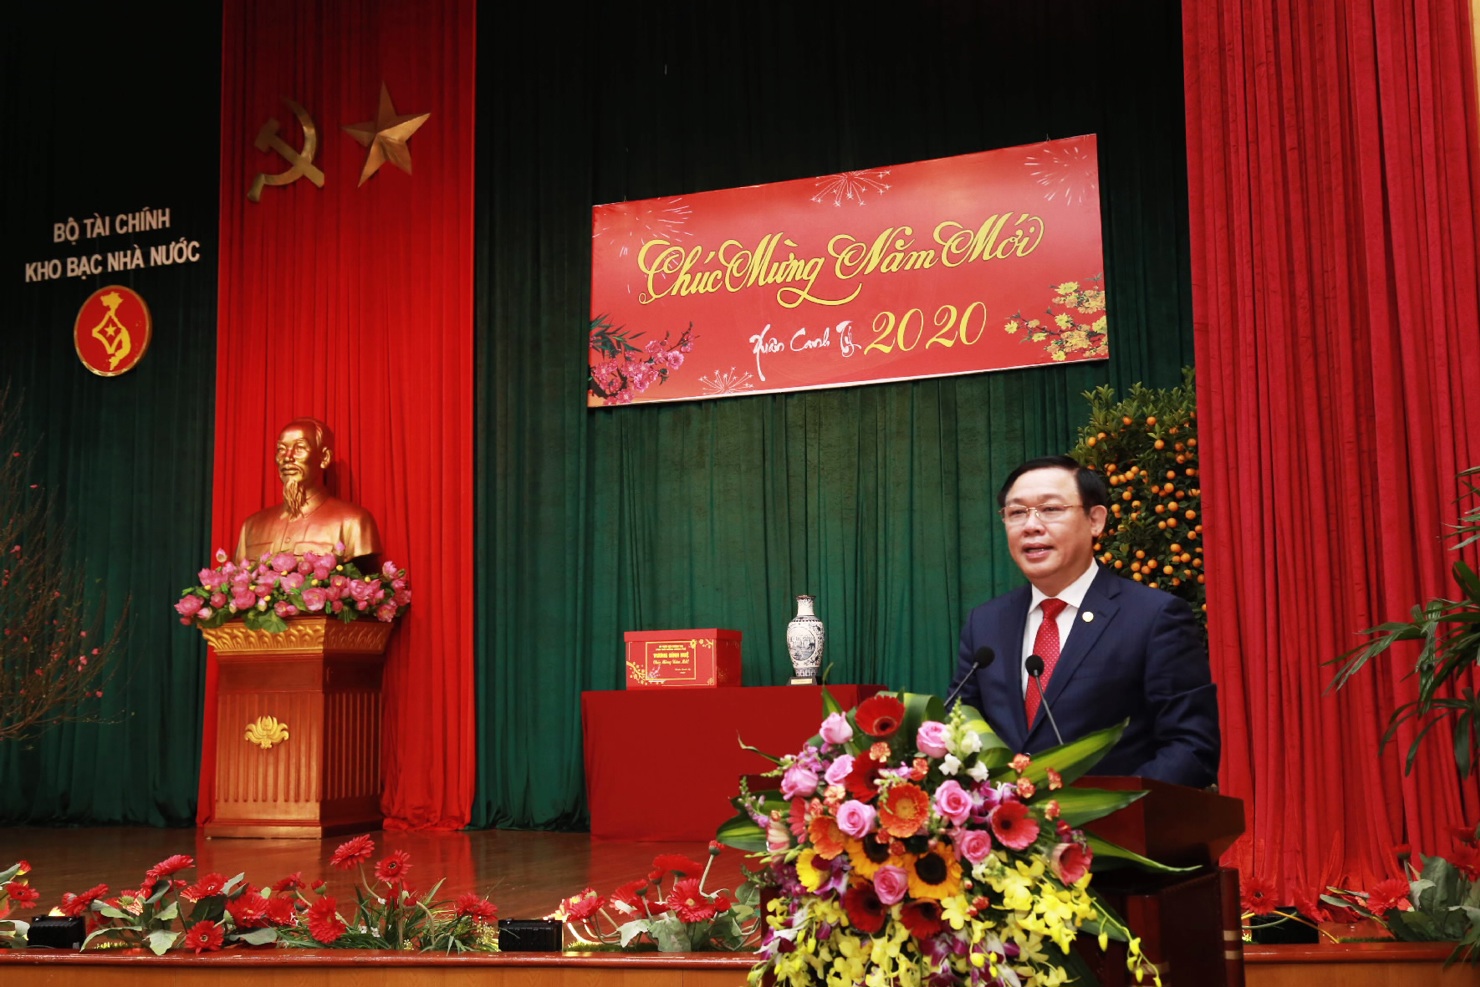 Phó Thủ tướng Vương Đình Huệ phát biểu tại buổi làm việc với Kho bạc Nhà nước.